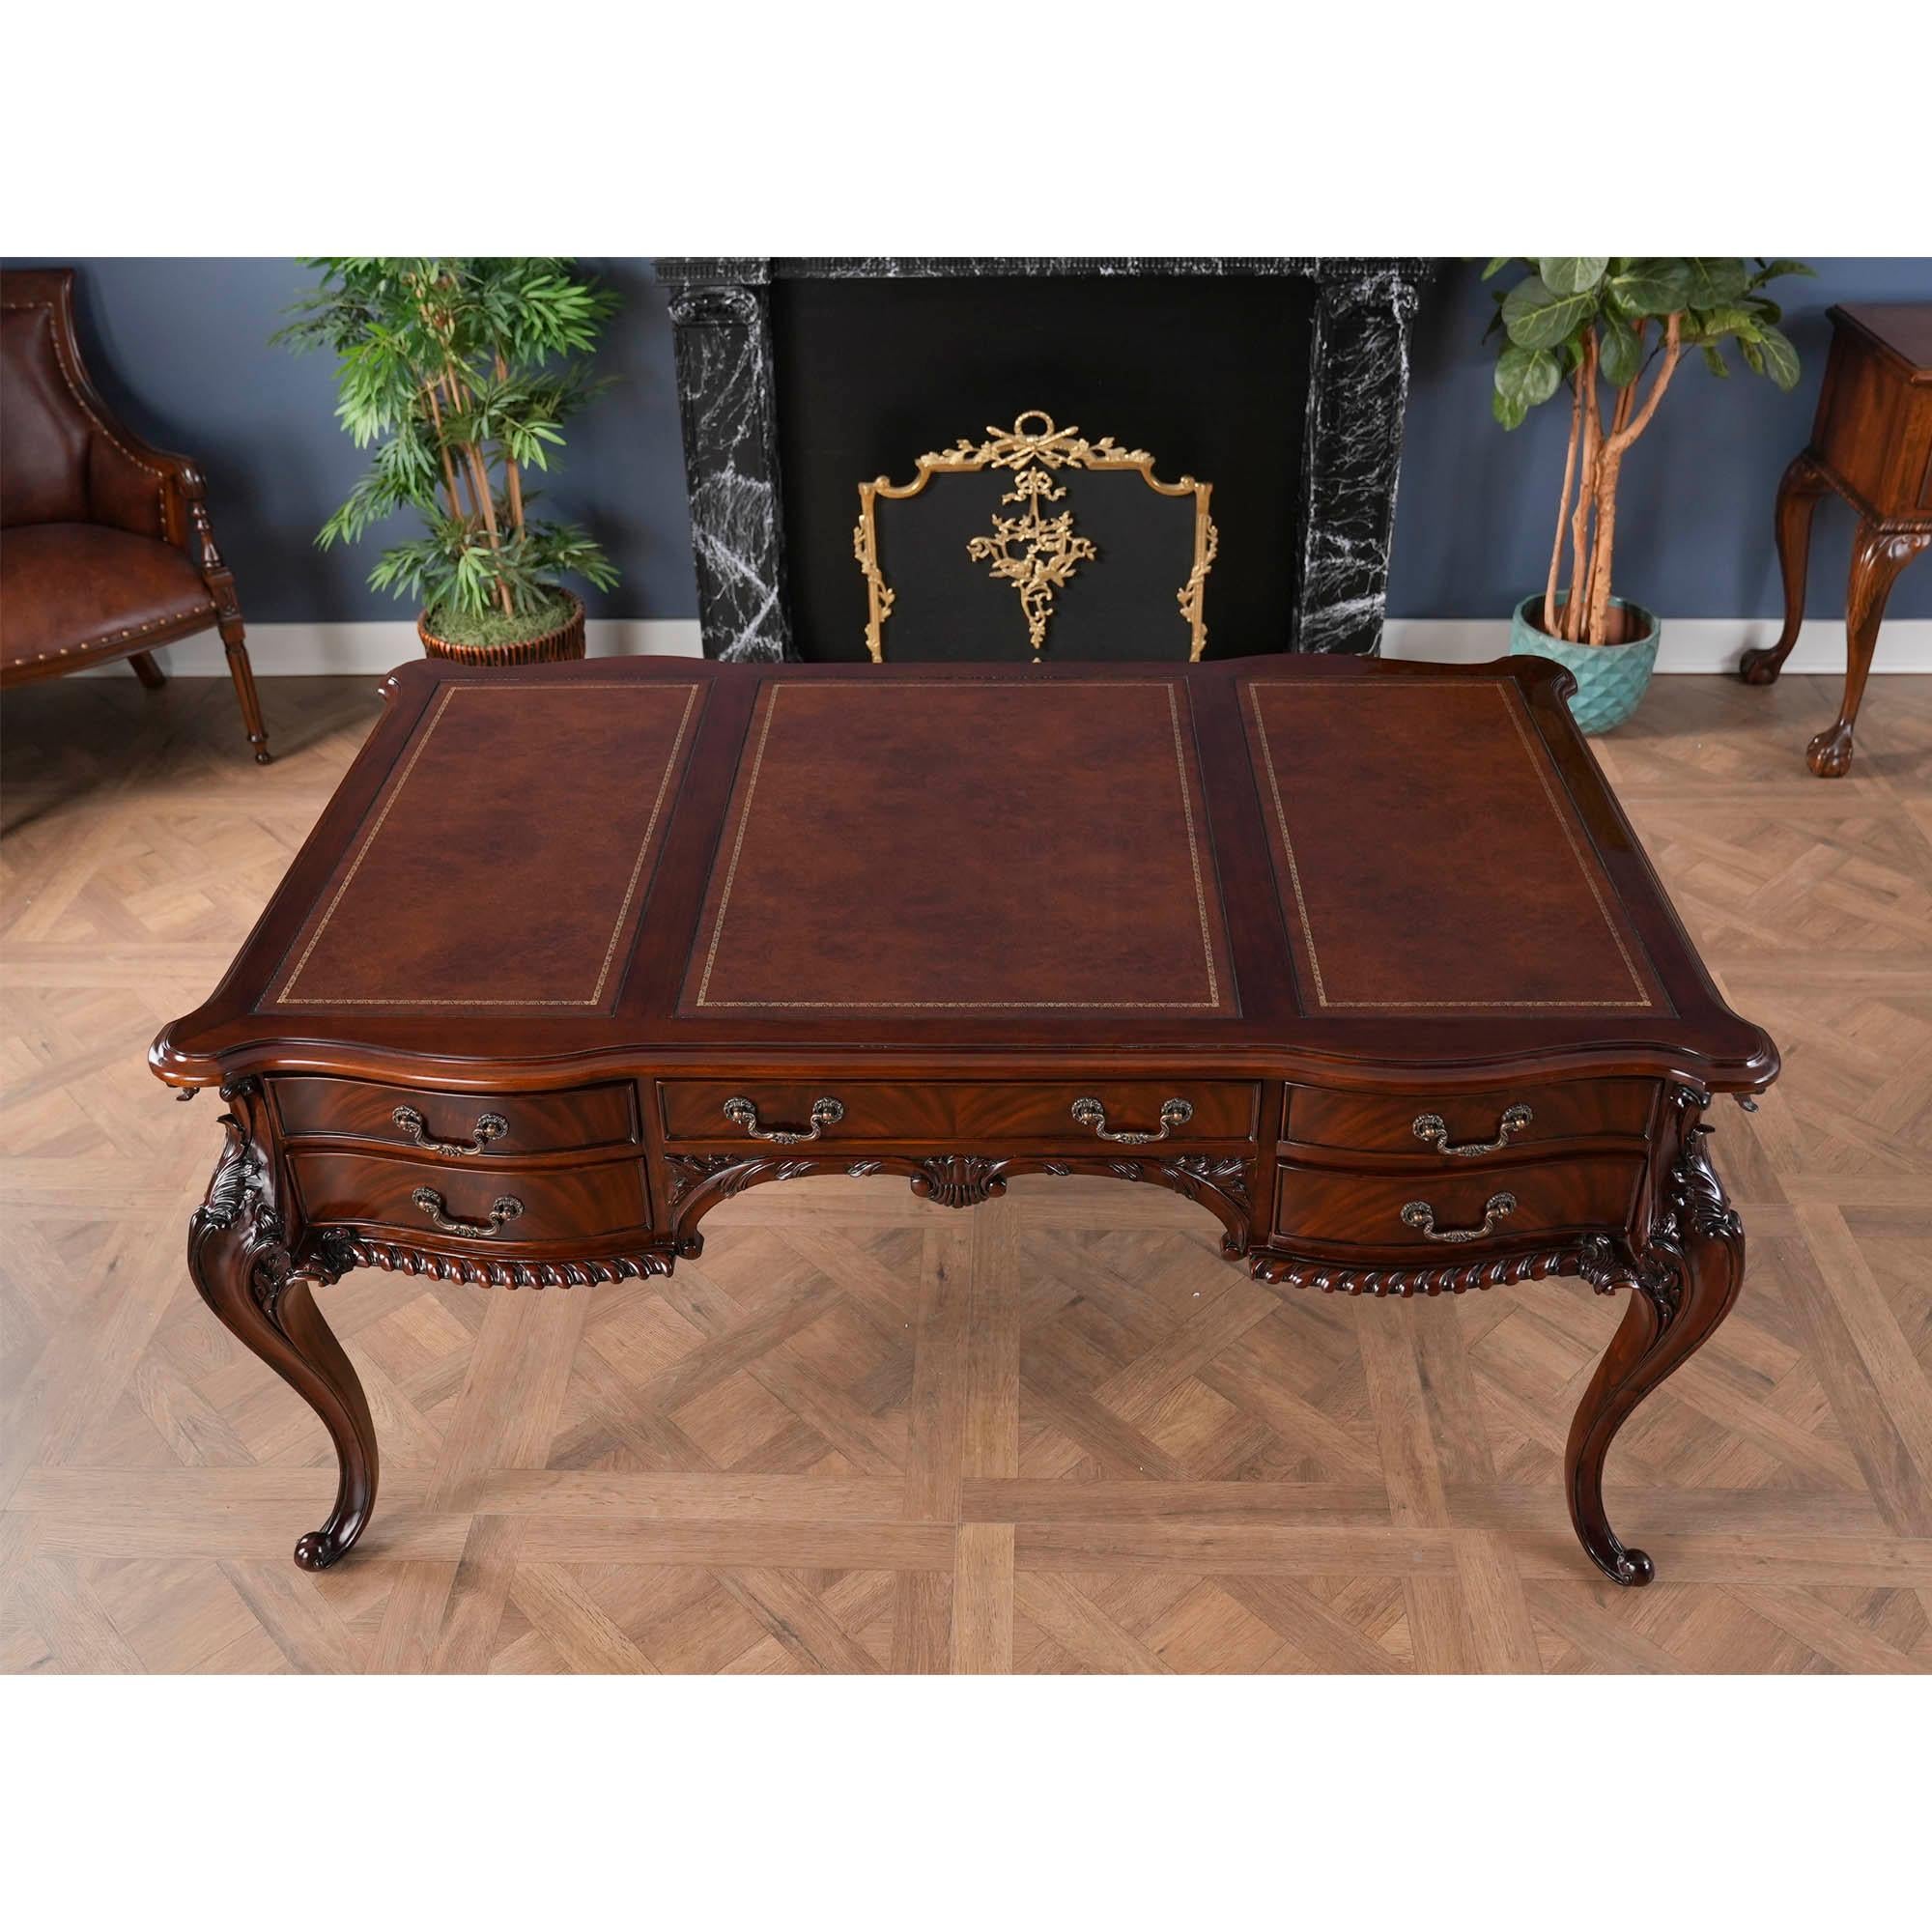 Dieser französische Schreibtisch im Chippendale-Stil aus Mahagoni und Leder wird von Niagara Furniture hergestellt. Ein hochwertiger Schreibtisch, der den Standard für Schönheit und Funktion unter den antiken Reproduktionen setzt. Die aus feinstem,